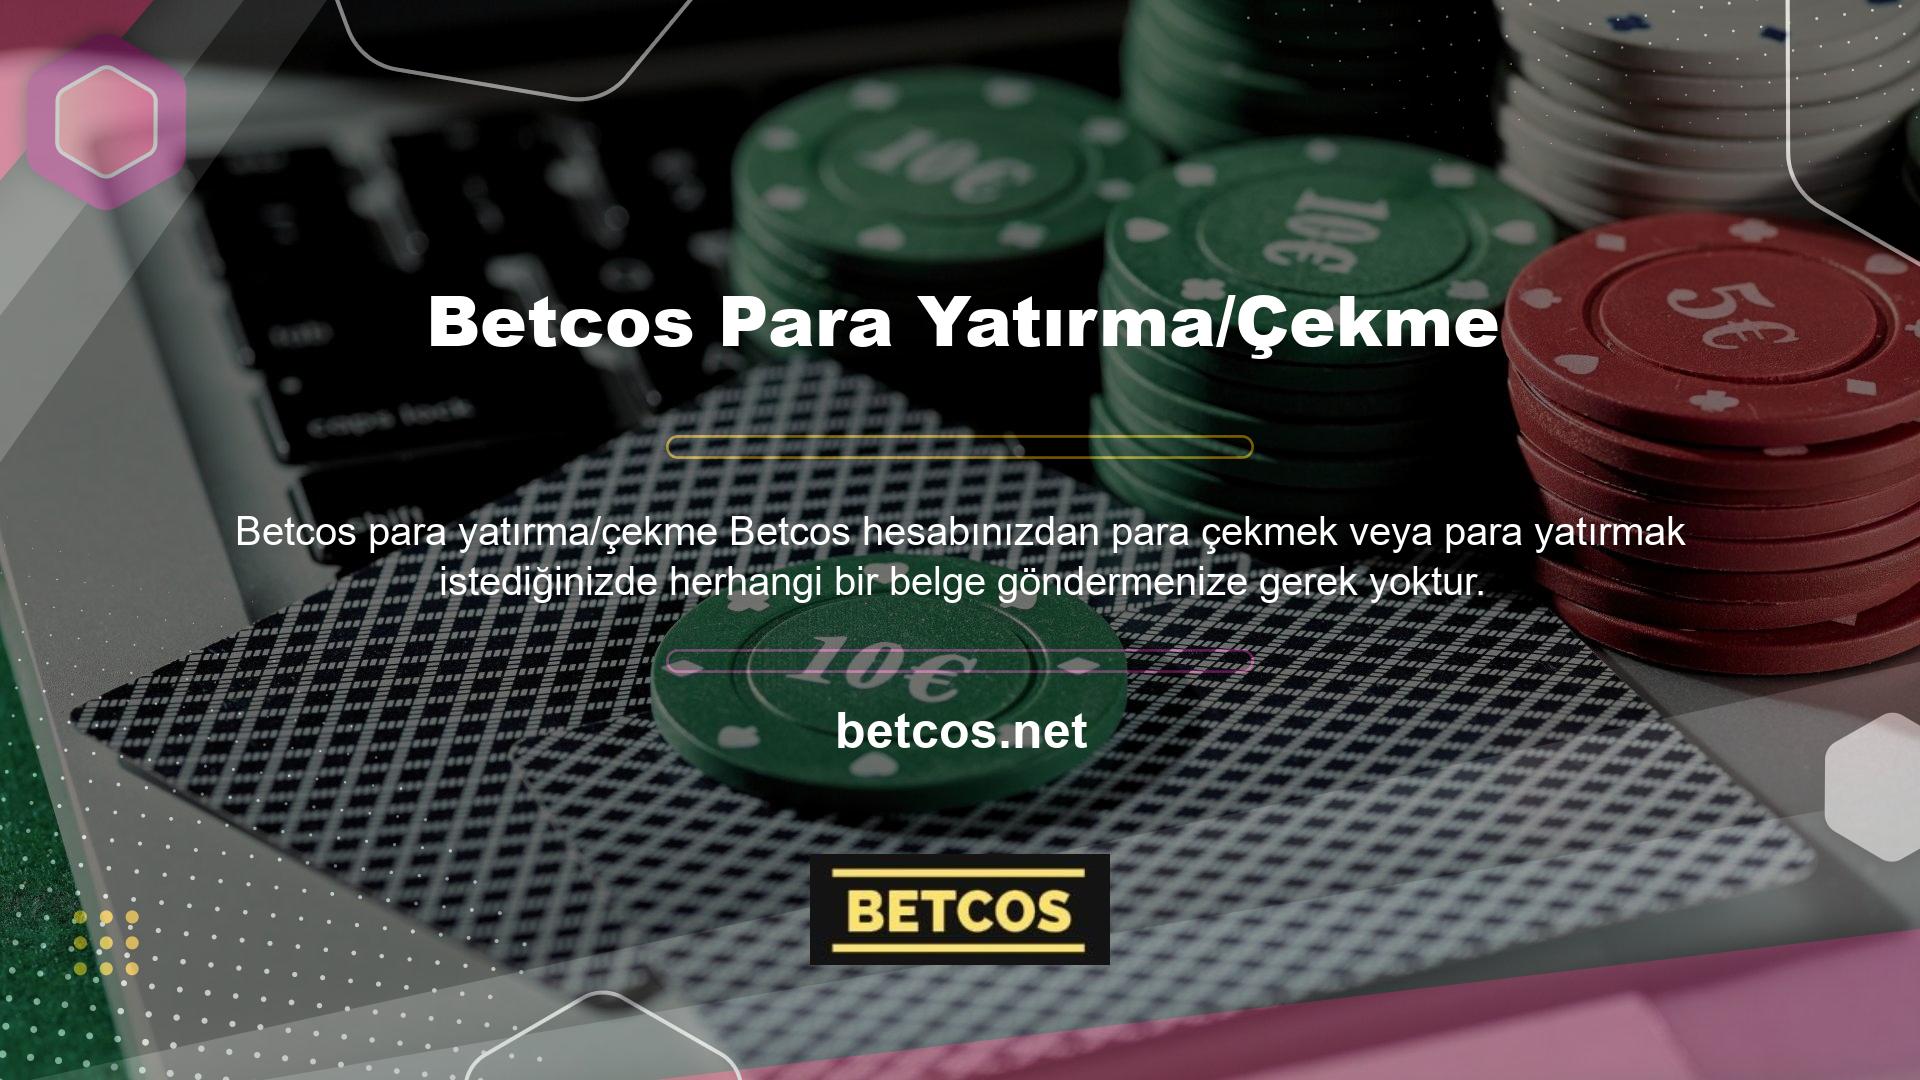 Bir casino web sitesi yanlışlıkla kullanıcıdan belge istedi